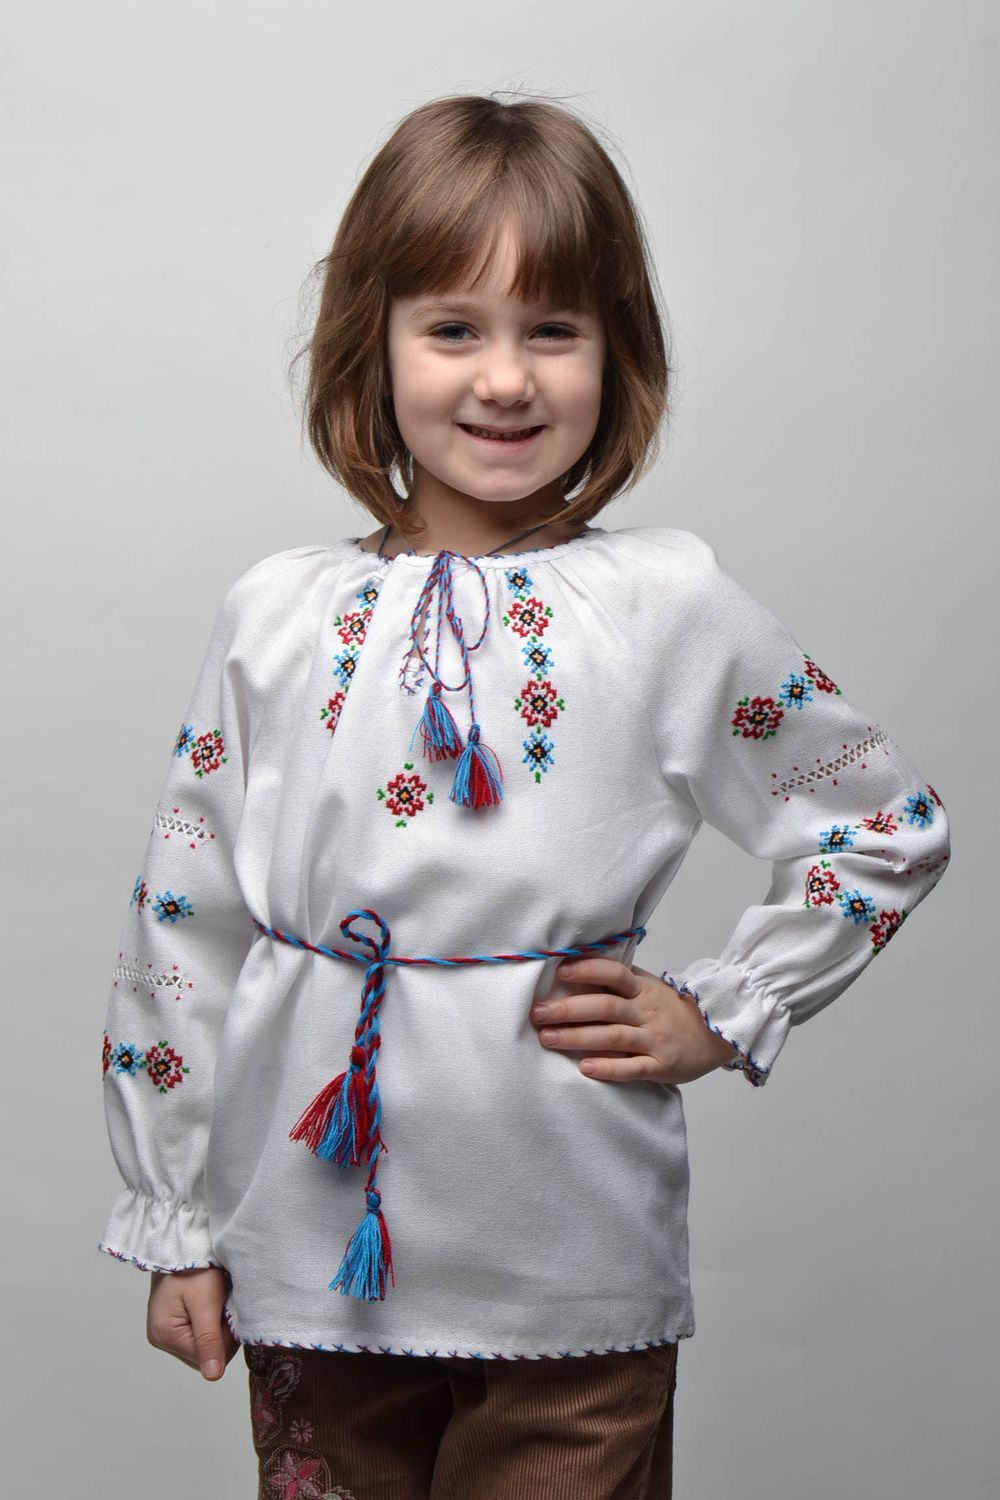 Camisa bordada de manga larga con cinturón para niña de 5-7 años de edad foto 1